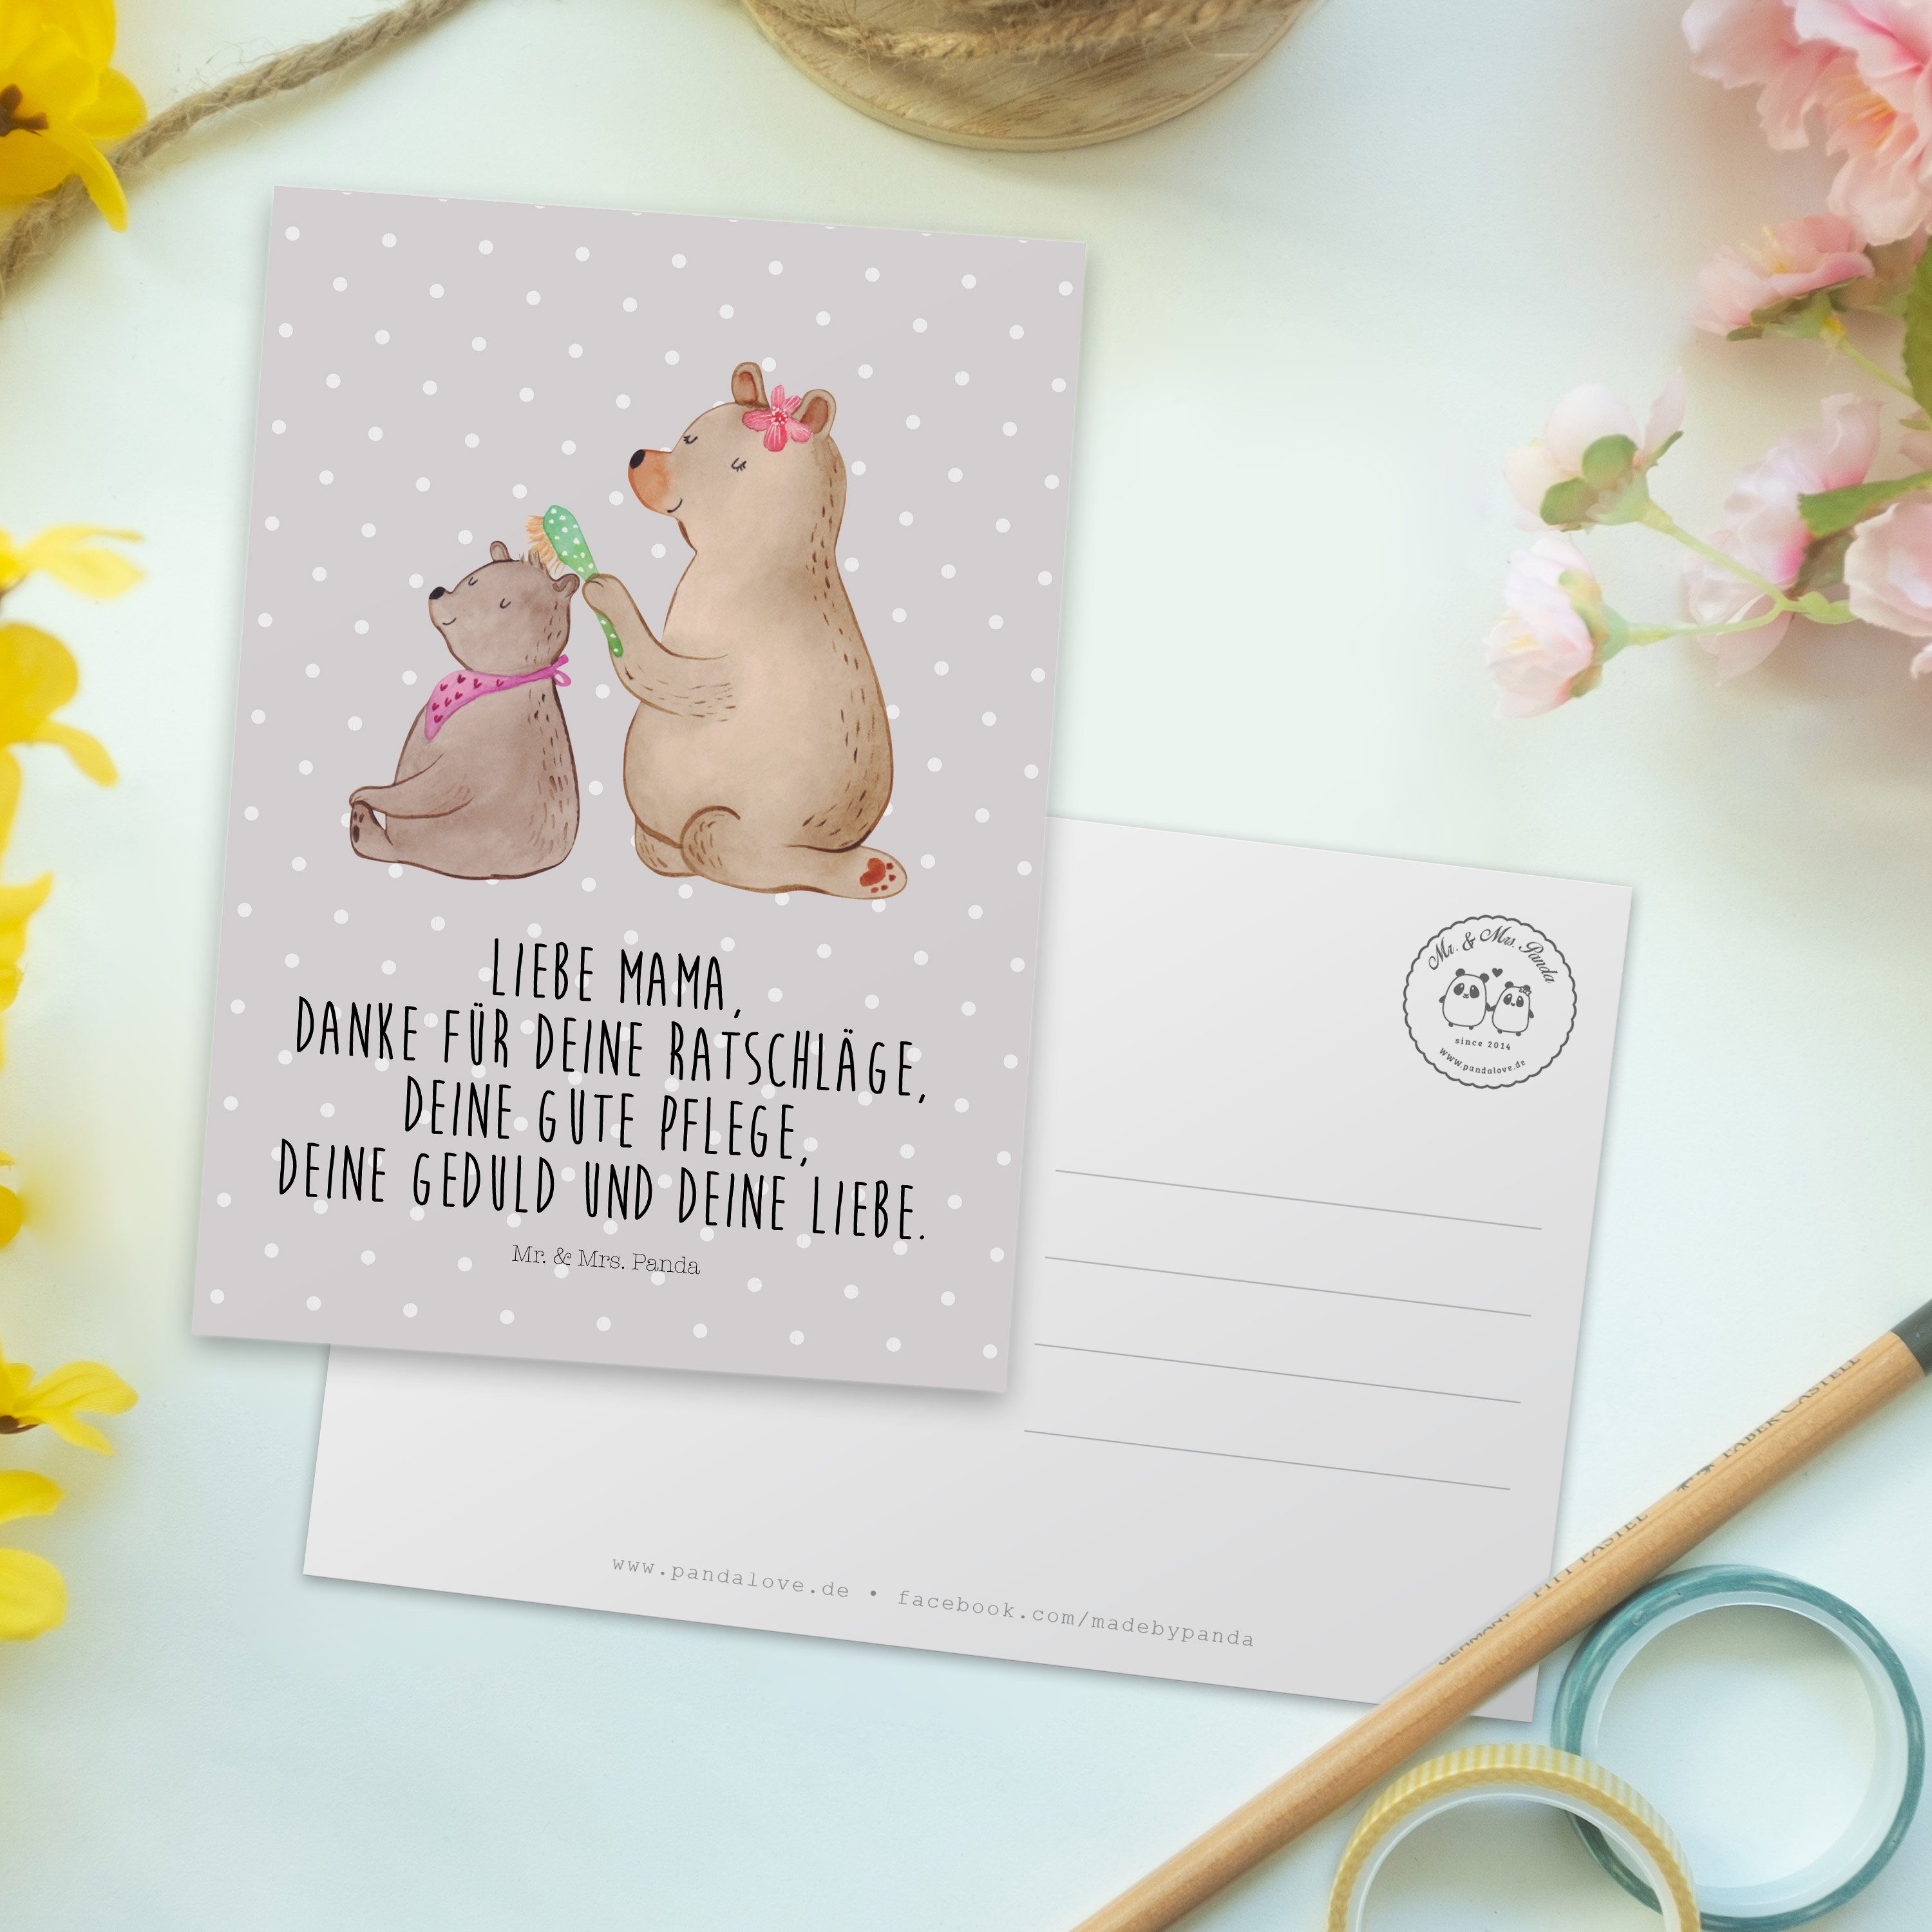 Mr. & Mrs. Bär - Geschenk, Familie, Postkarte Panda mit Einladungskarte, Grau Pastell - Ges Kind